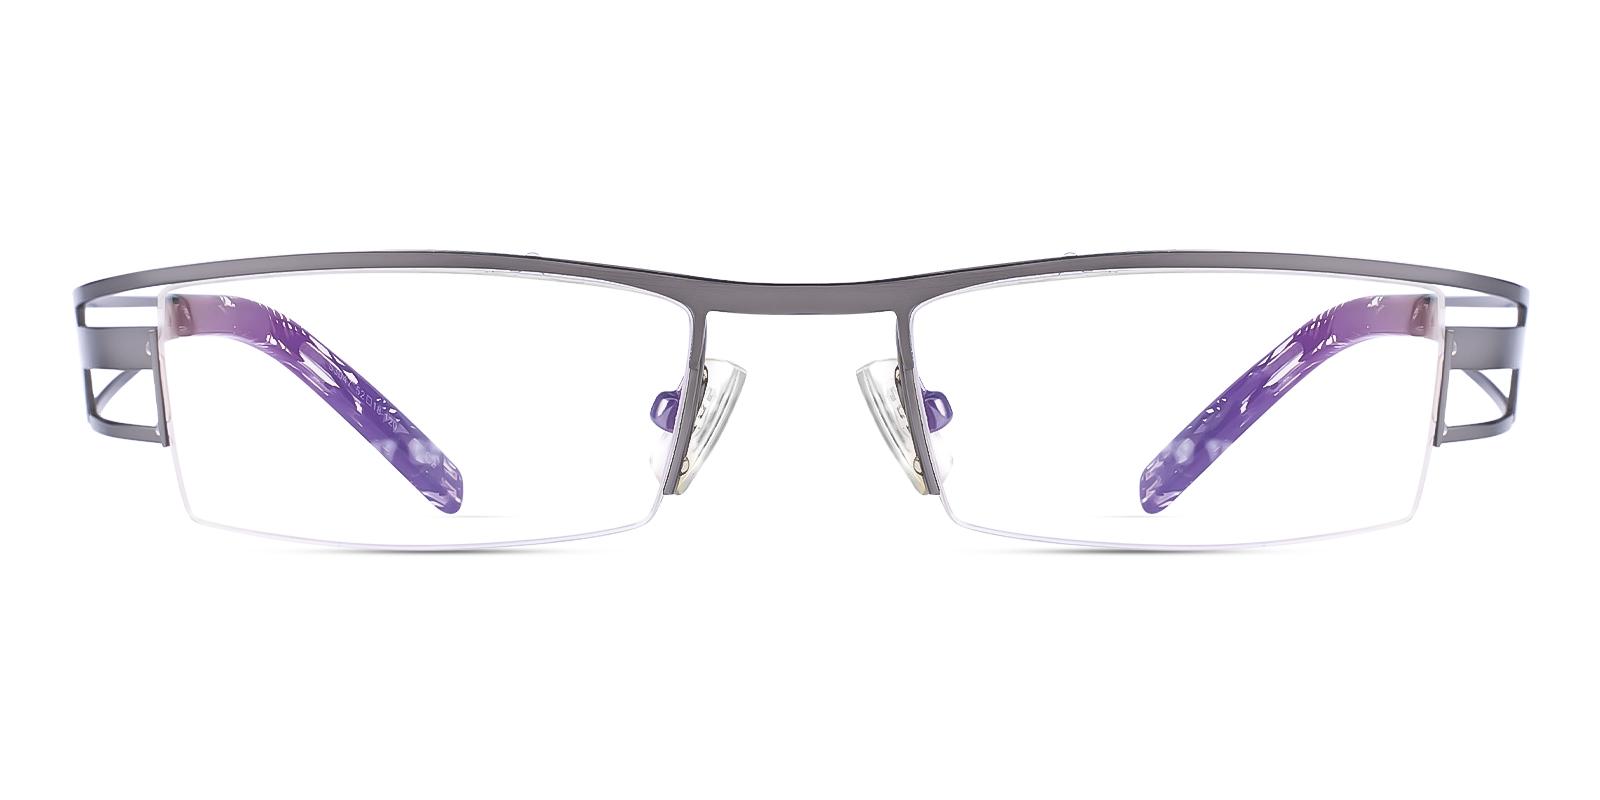 Artics Gun Metal Eyeglasses , NosePads , SportsGlasses Frames from ABBE Glasses